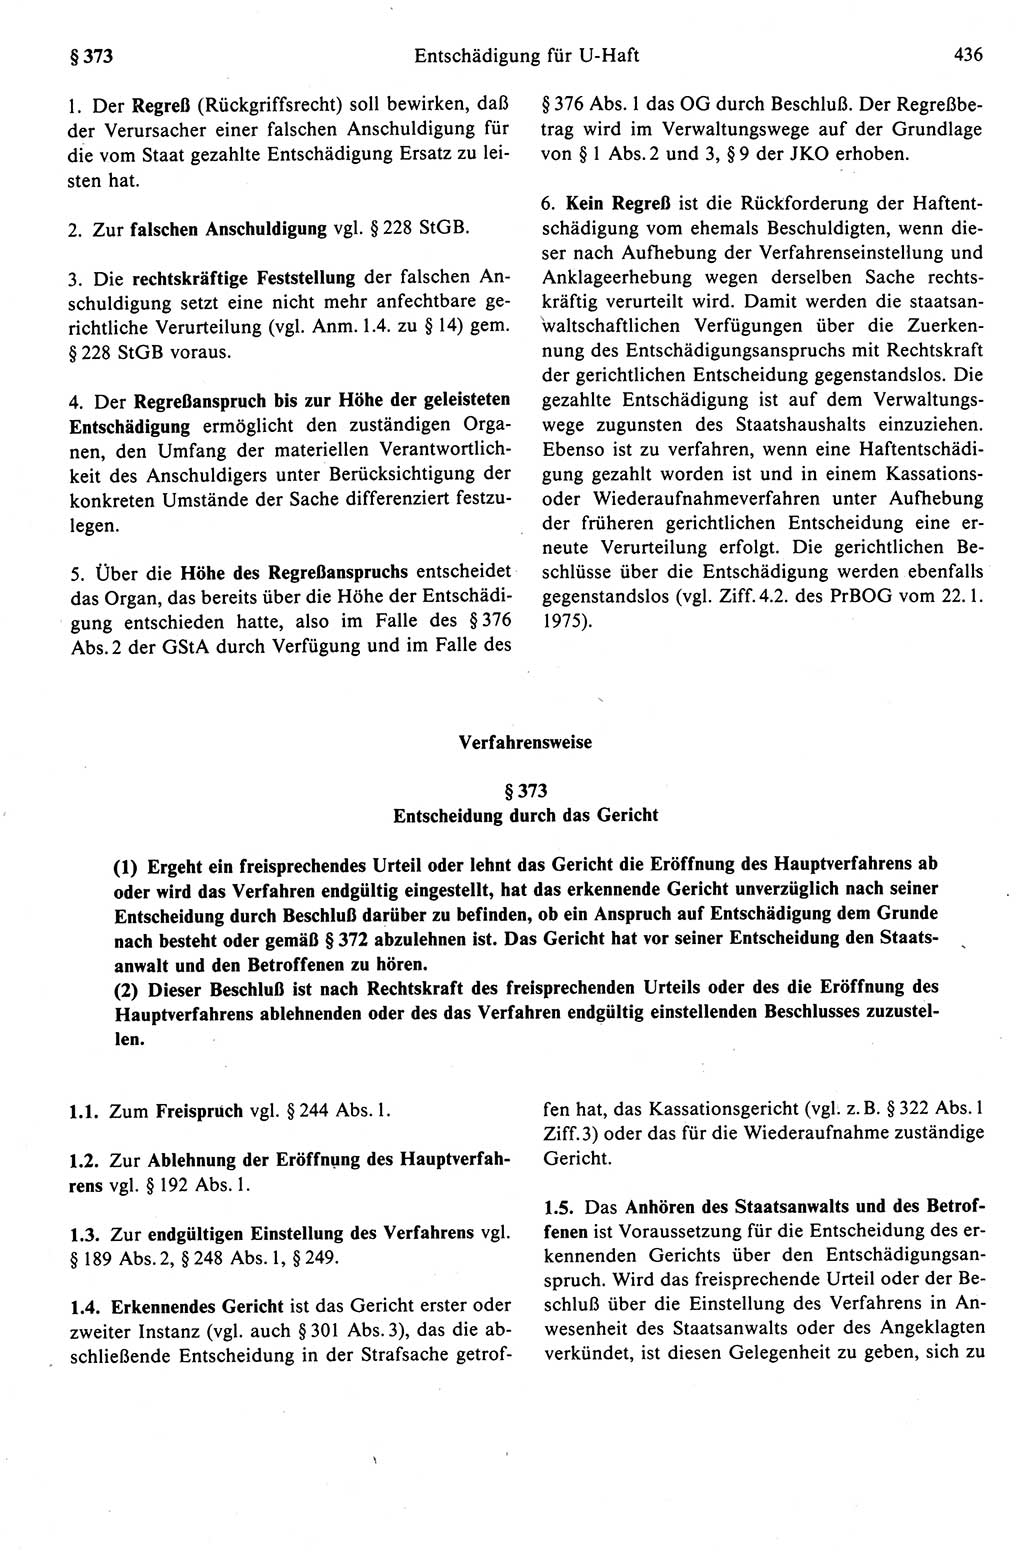 Strafprozeßrecht der DDR (Deutsche Demokratische Republik), Kommentar zur Strafprozeßordnung (StPO) 1989, Seite 436 (Strafprozeßr. DDR Komm. StPO 1989, S. 436)